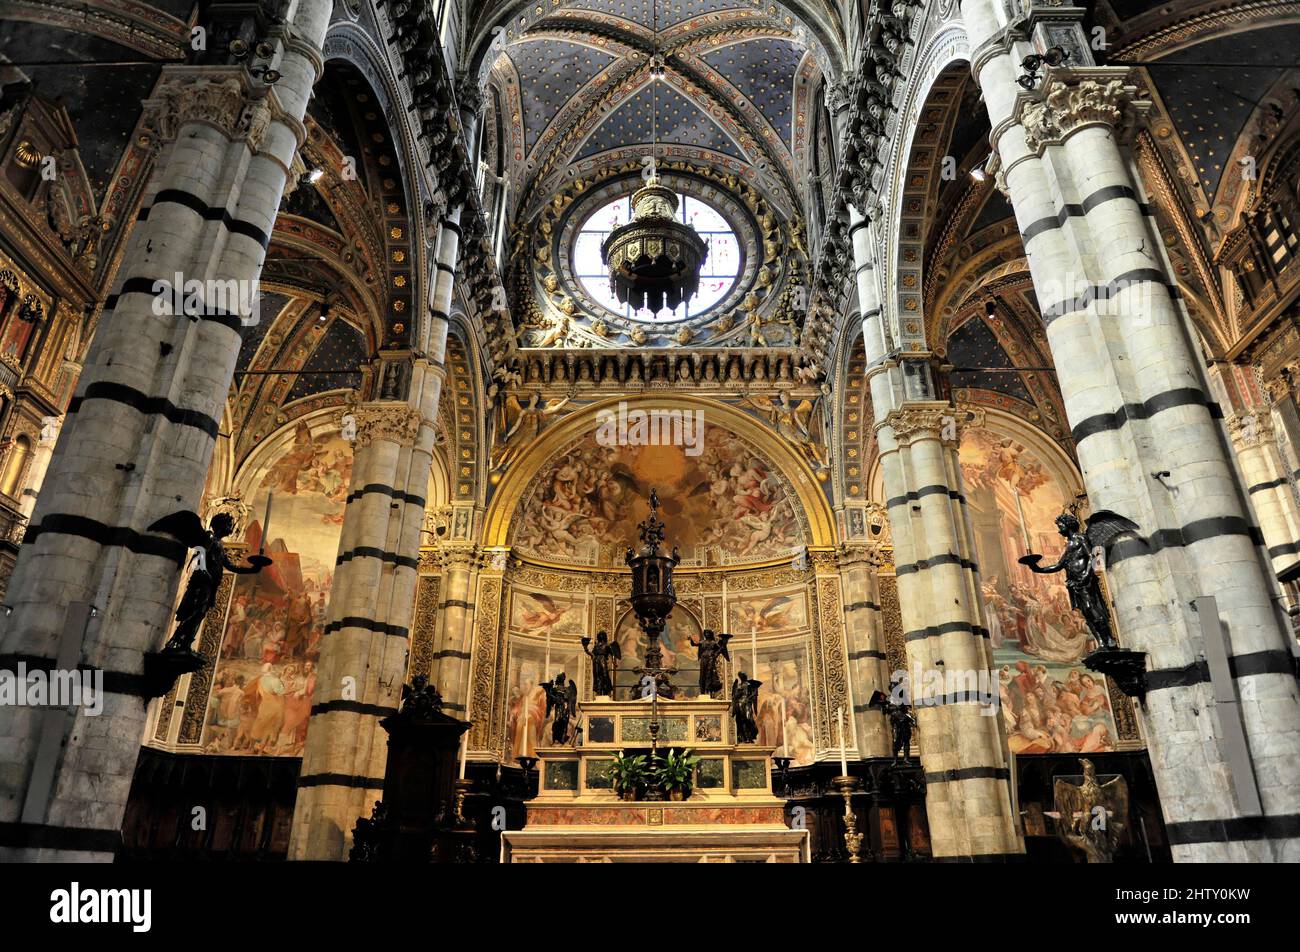 Altar und Apsis der Kathedrale Santa Maria Assunta von Siena, neben Säulen der romanisch-gotischen Architektur, Duomo di Siena, Siena Stockfoto